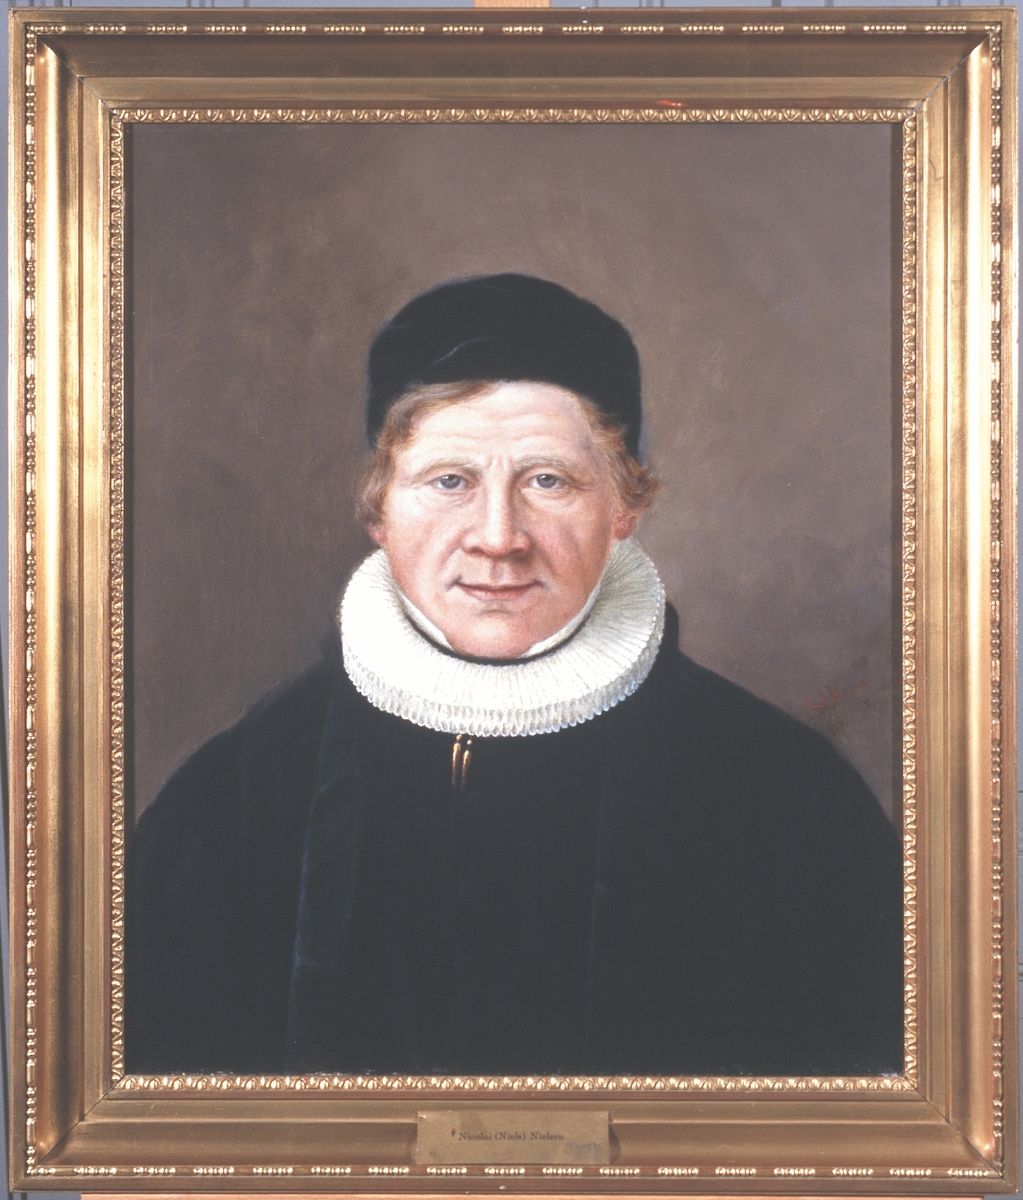 Portrett av Nicolai (Niels) Nielsen. Prestekjole og pipekrave, svart hodeplagg (kalott).